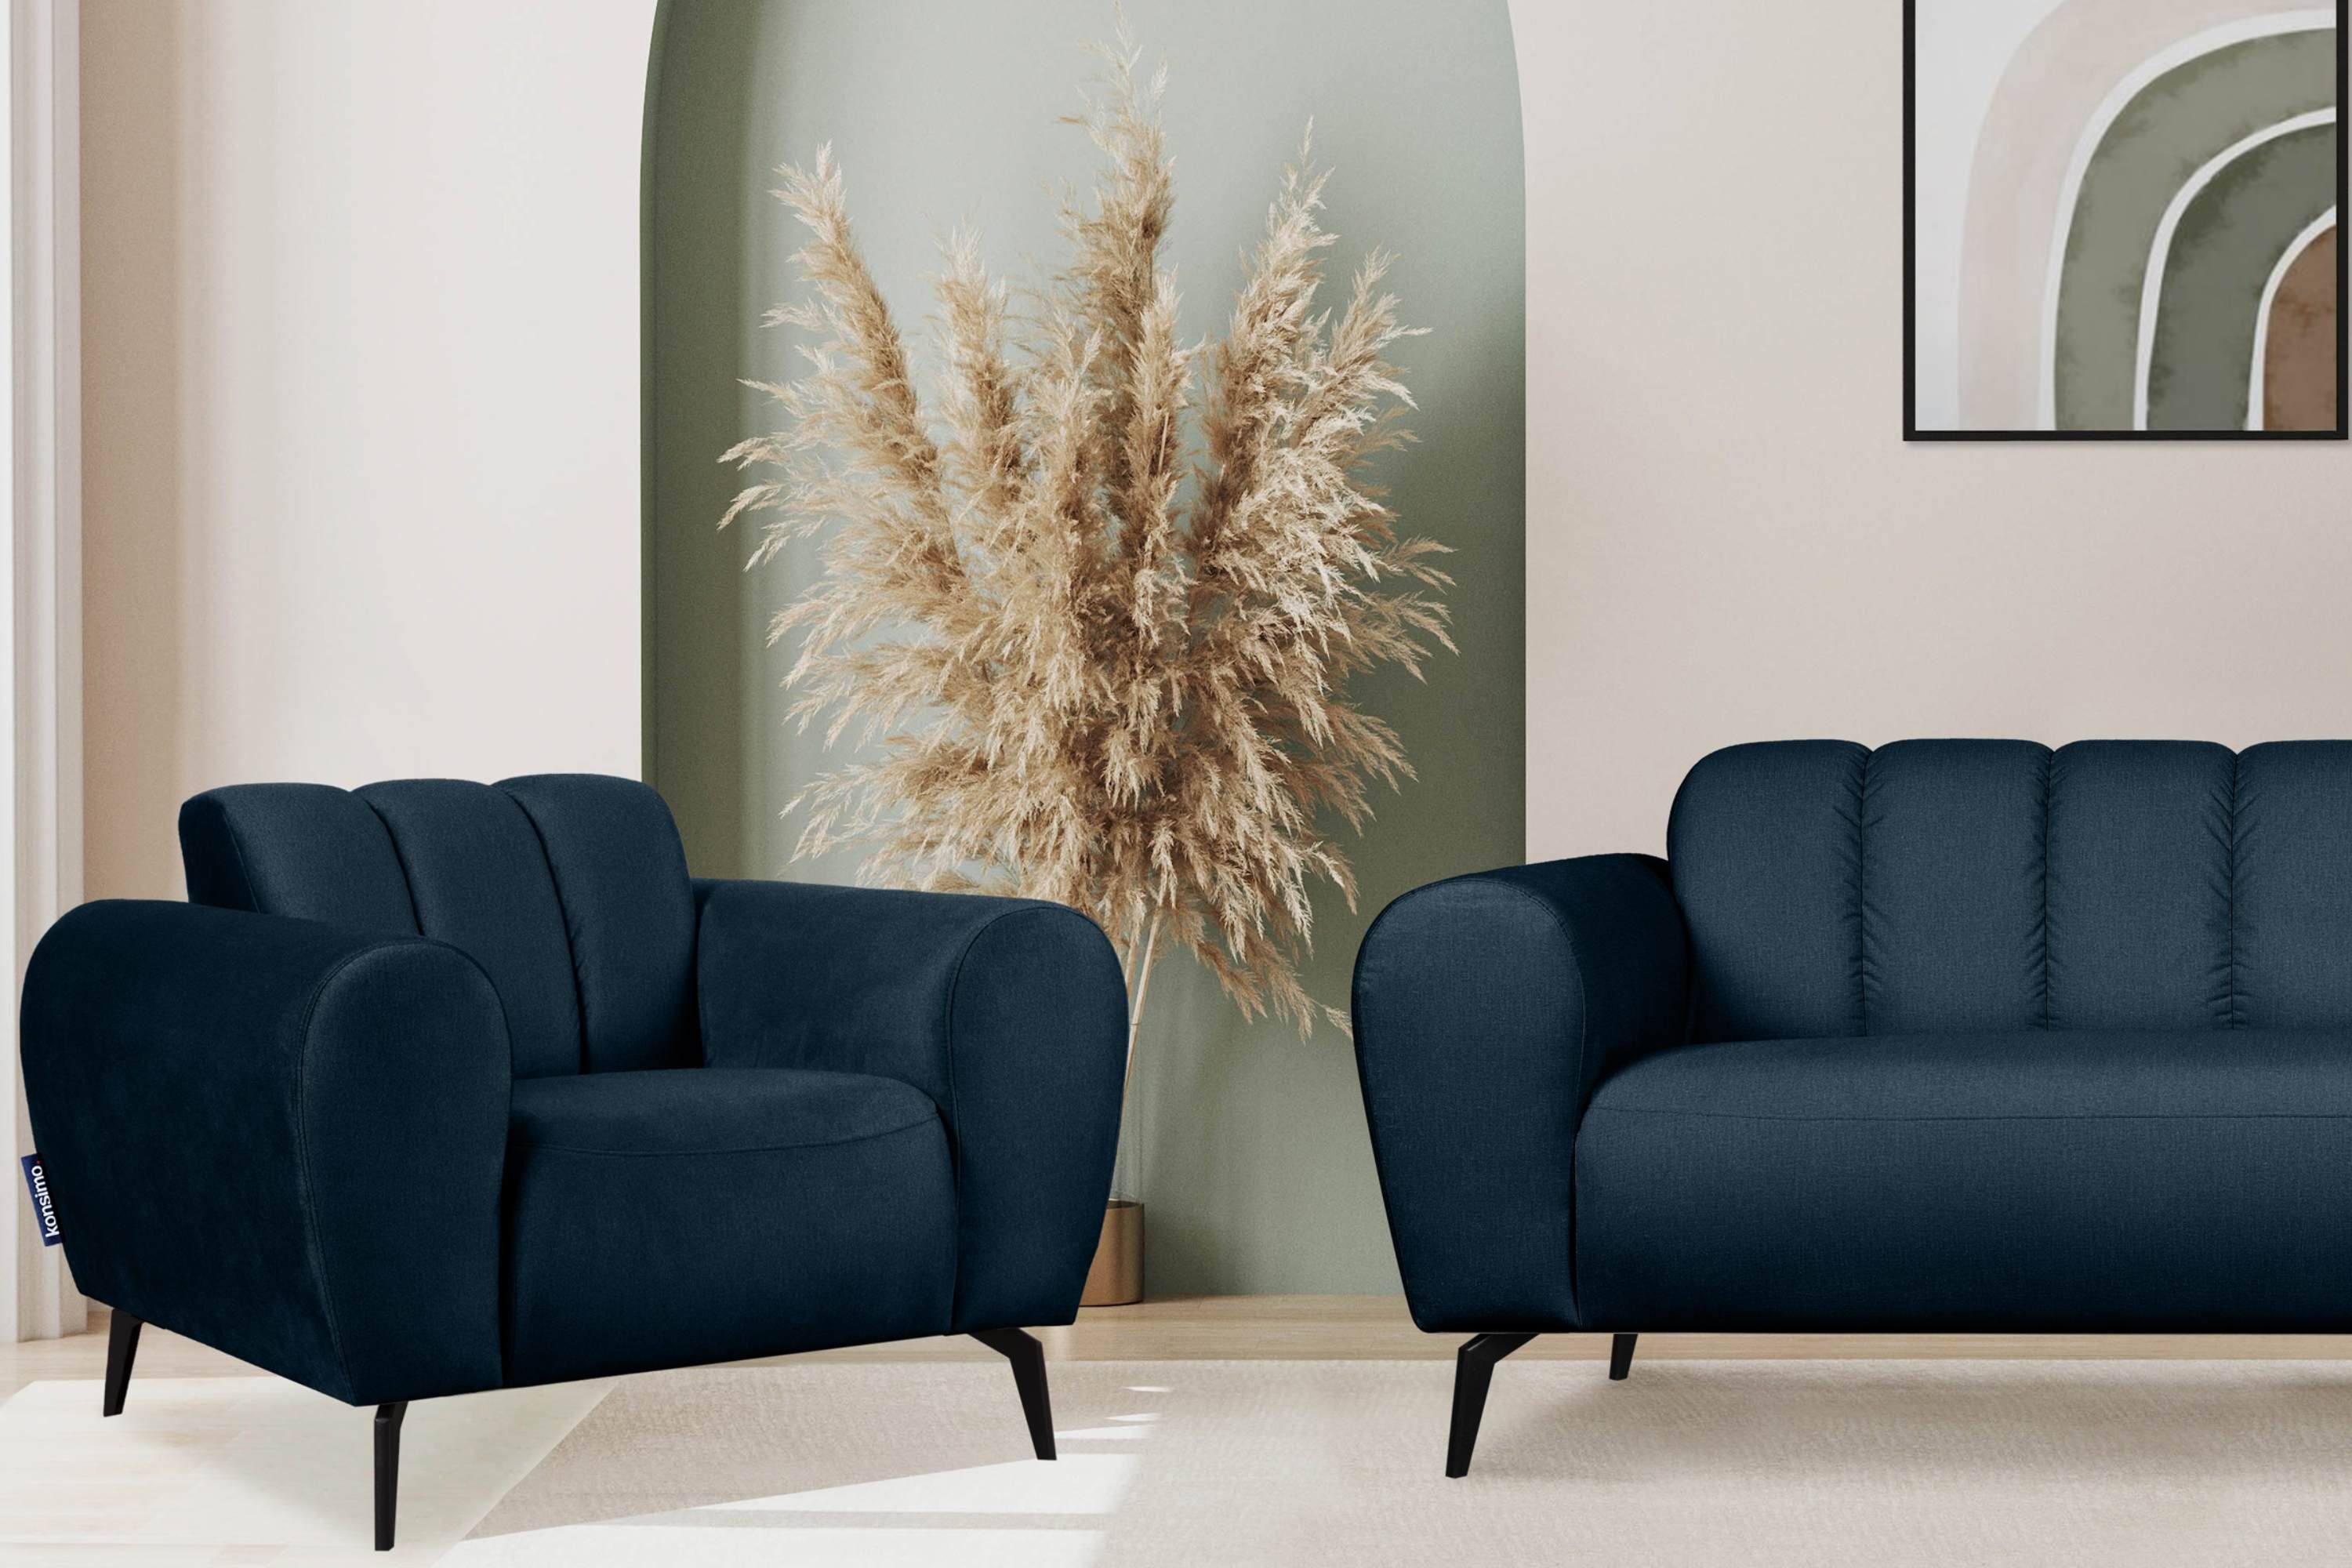 Gewebe mit Armlehnen, modernes Konsimo marineblau Sessel Design RUBERO breiten Eigenschaften, wasserabweisenden | mit marineblau